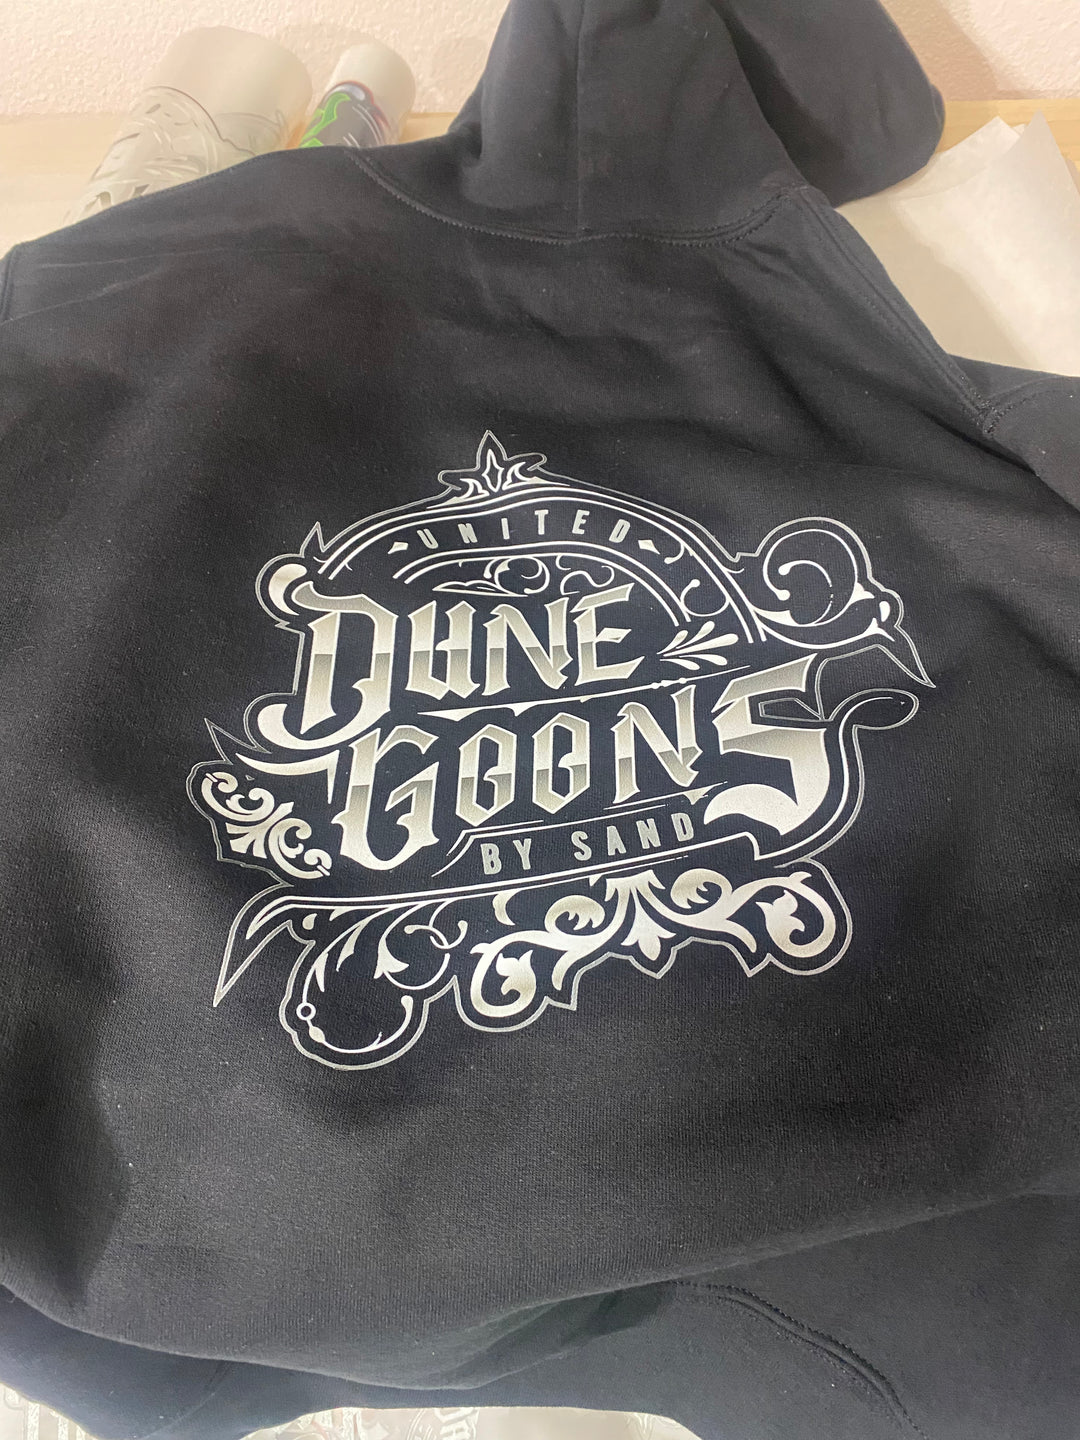 New Dune Goons Logo Hoodie